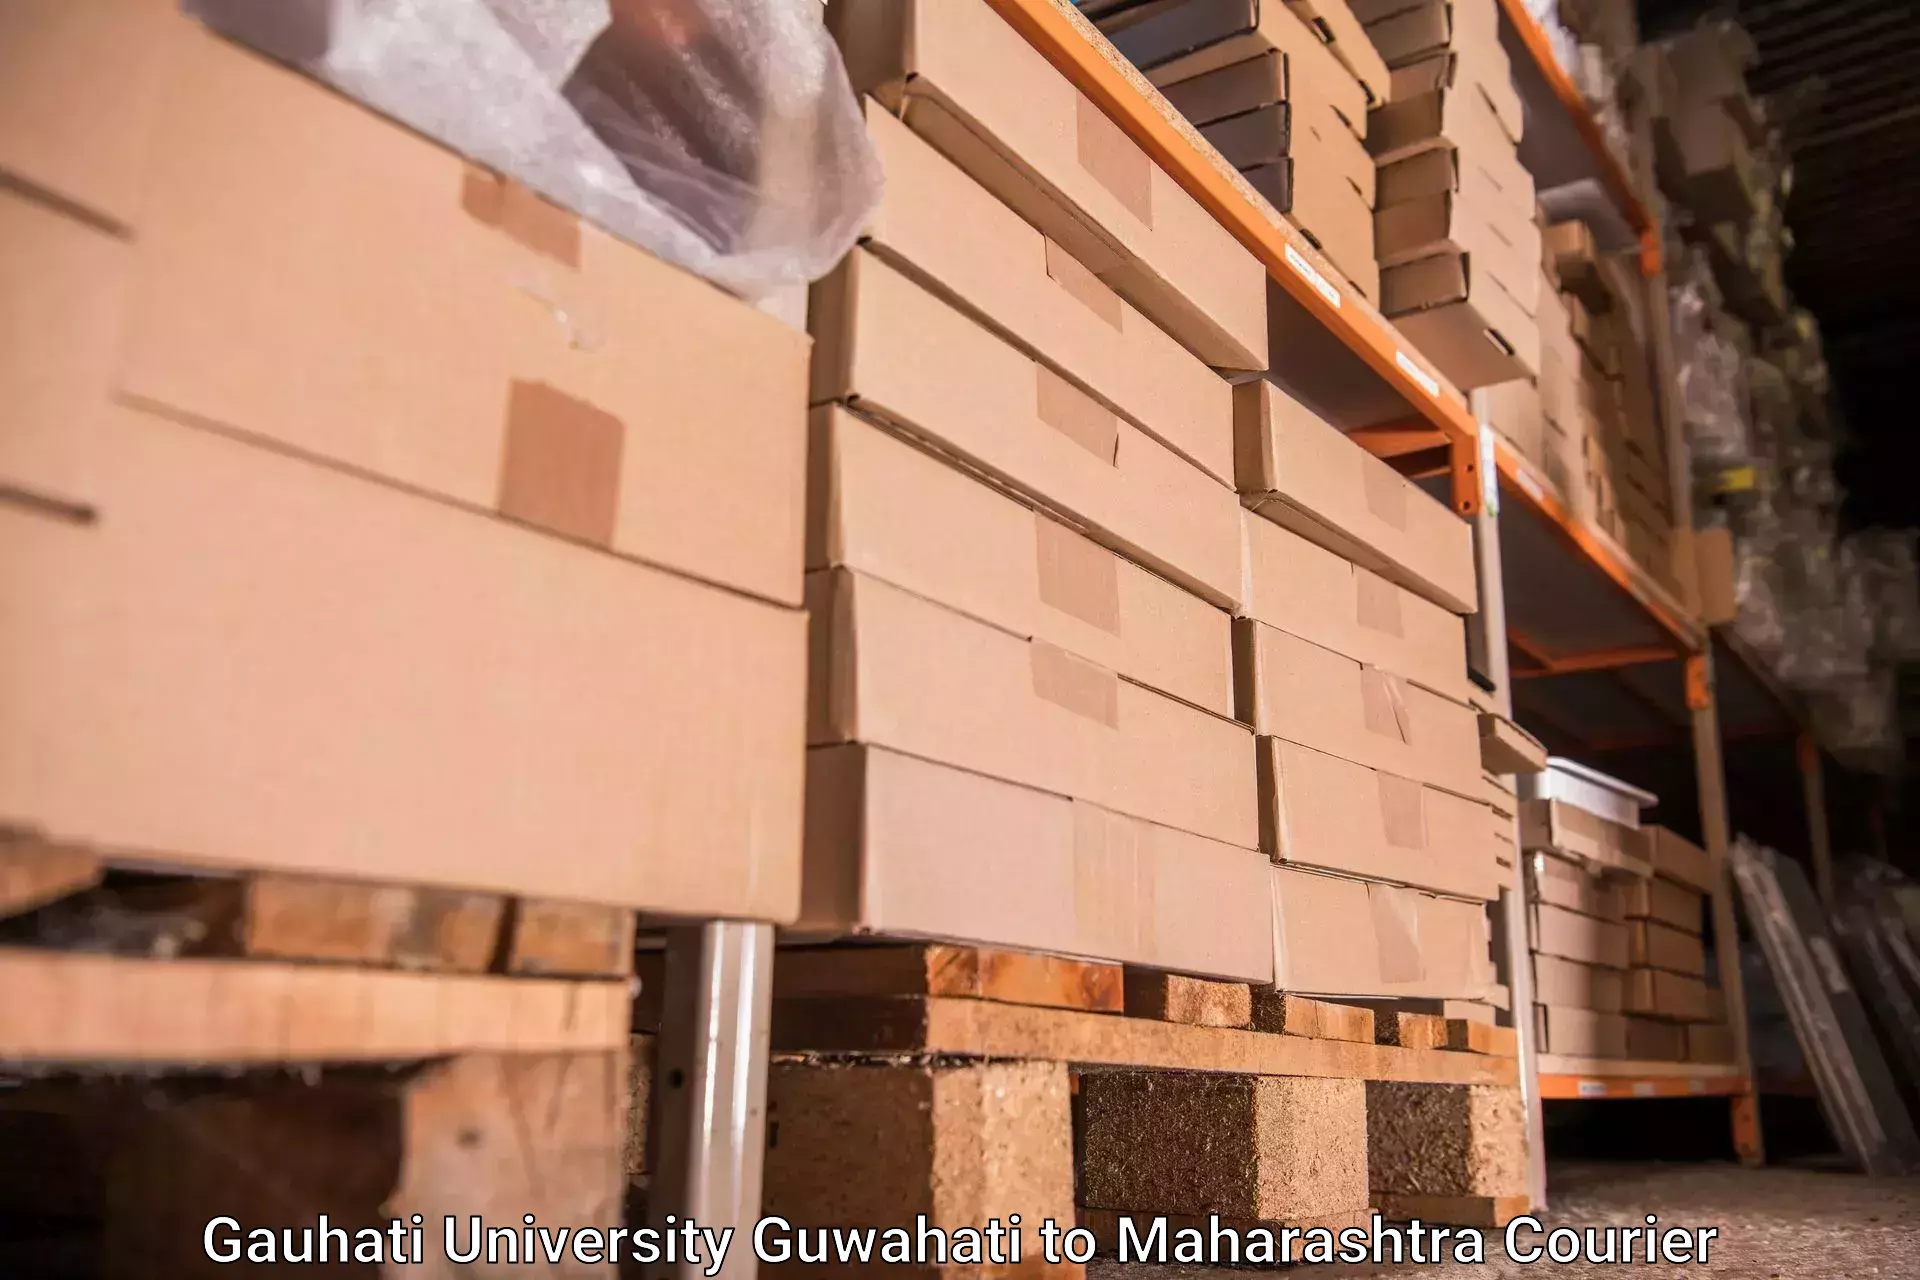 Baggage courier operations Gauhati University Guwahati to Homi Bhabha National Institute Mumbai